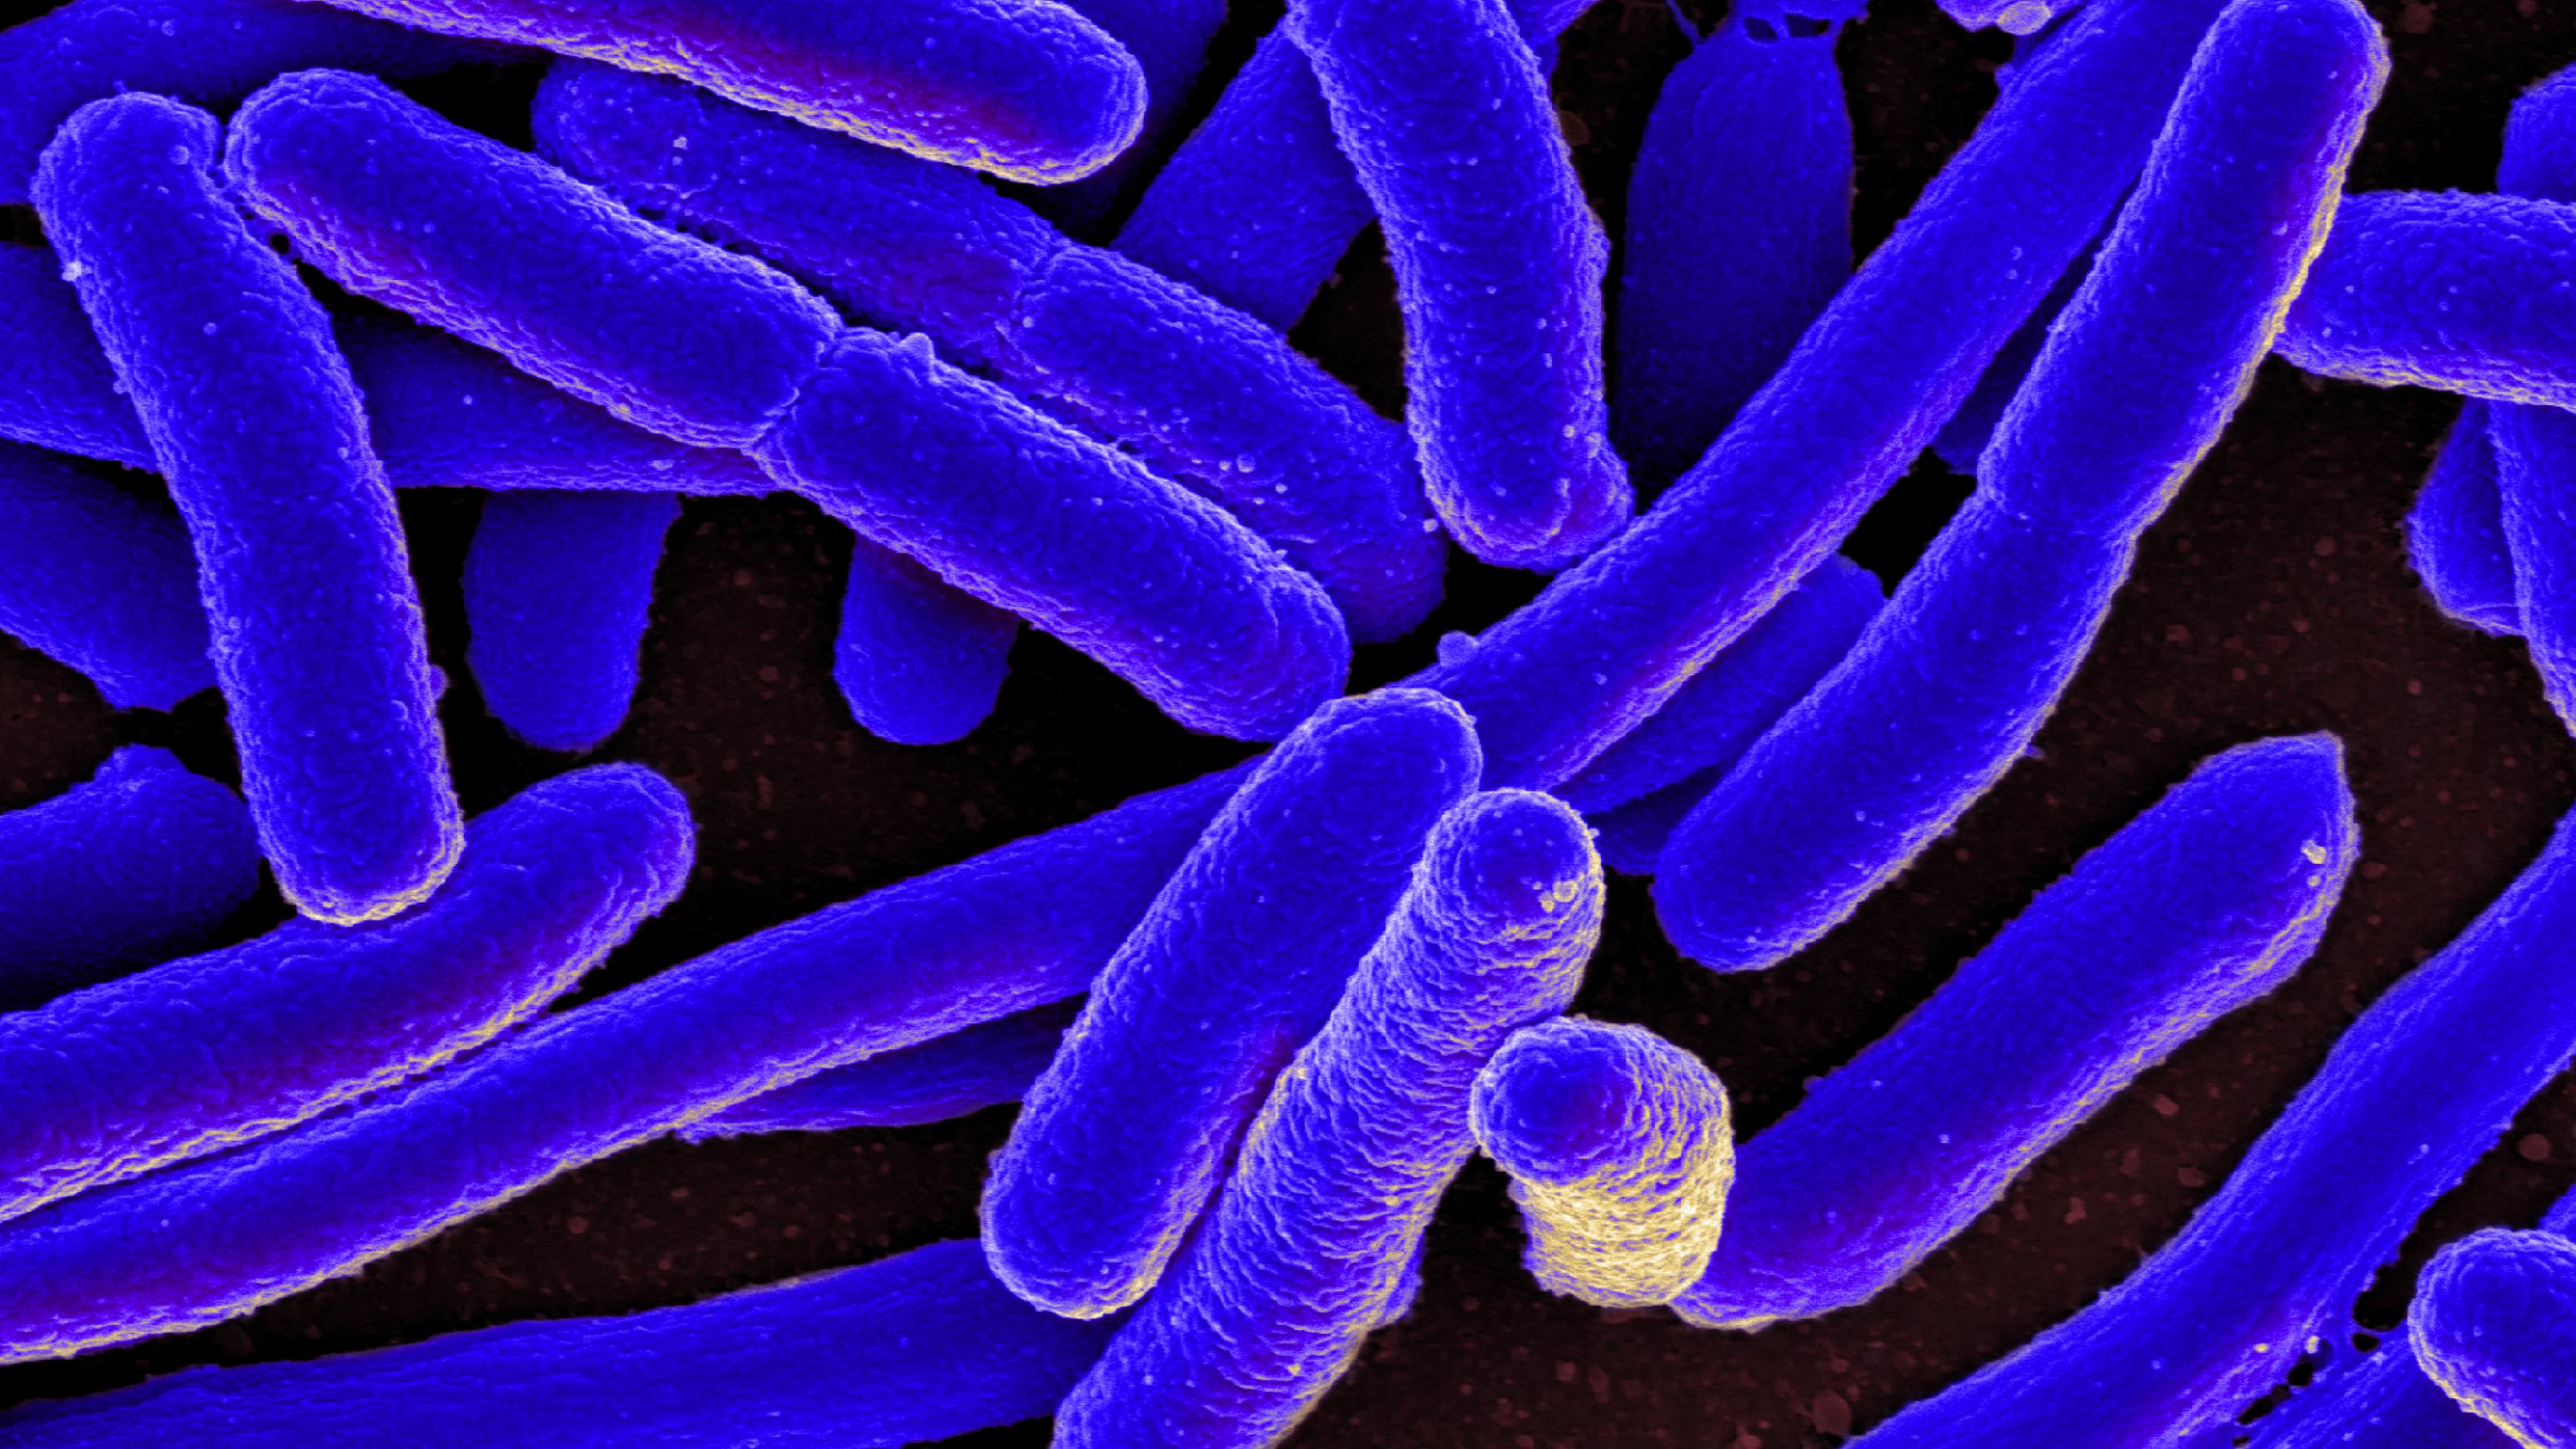 Lange, stäbchenförmige Escherichia-coli-Bakterien in rasterelektronenmikroskopischer Auflösung. Die Bakterien wurden im Nachhinein blau eingefärbt und wirken sehr plastisch.